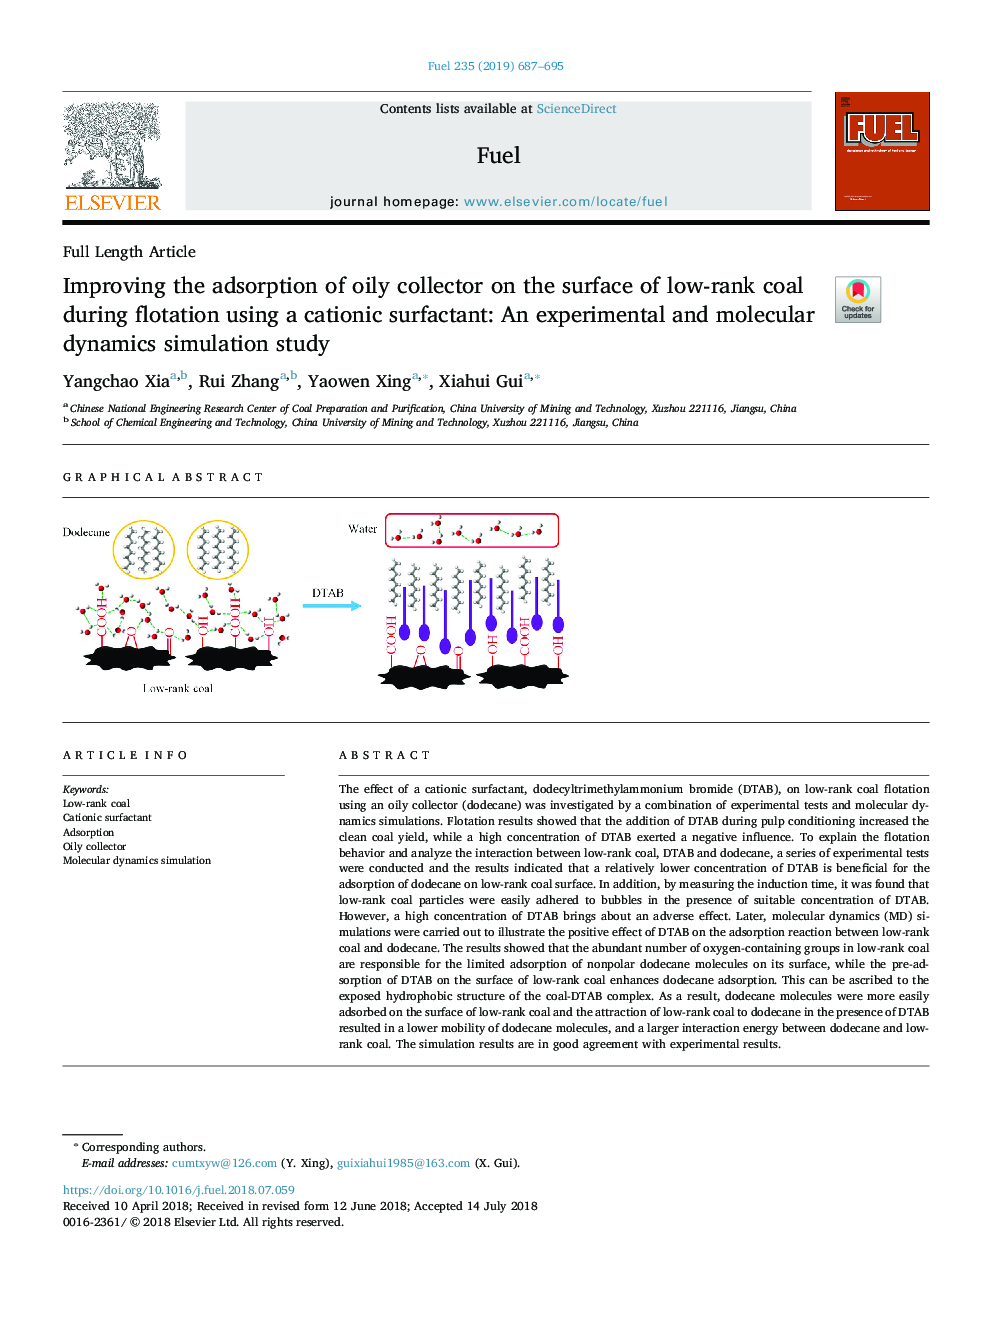 بهبود جذب کلکتور روغن بر روی سطح زغال سنگ کم در طول فلوتاسیون با استفاده از سورفکتانت کاتیونی: یک مطالعه شبیه سازی دینامیکی تجربی و مولکولی